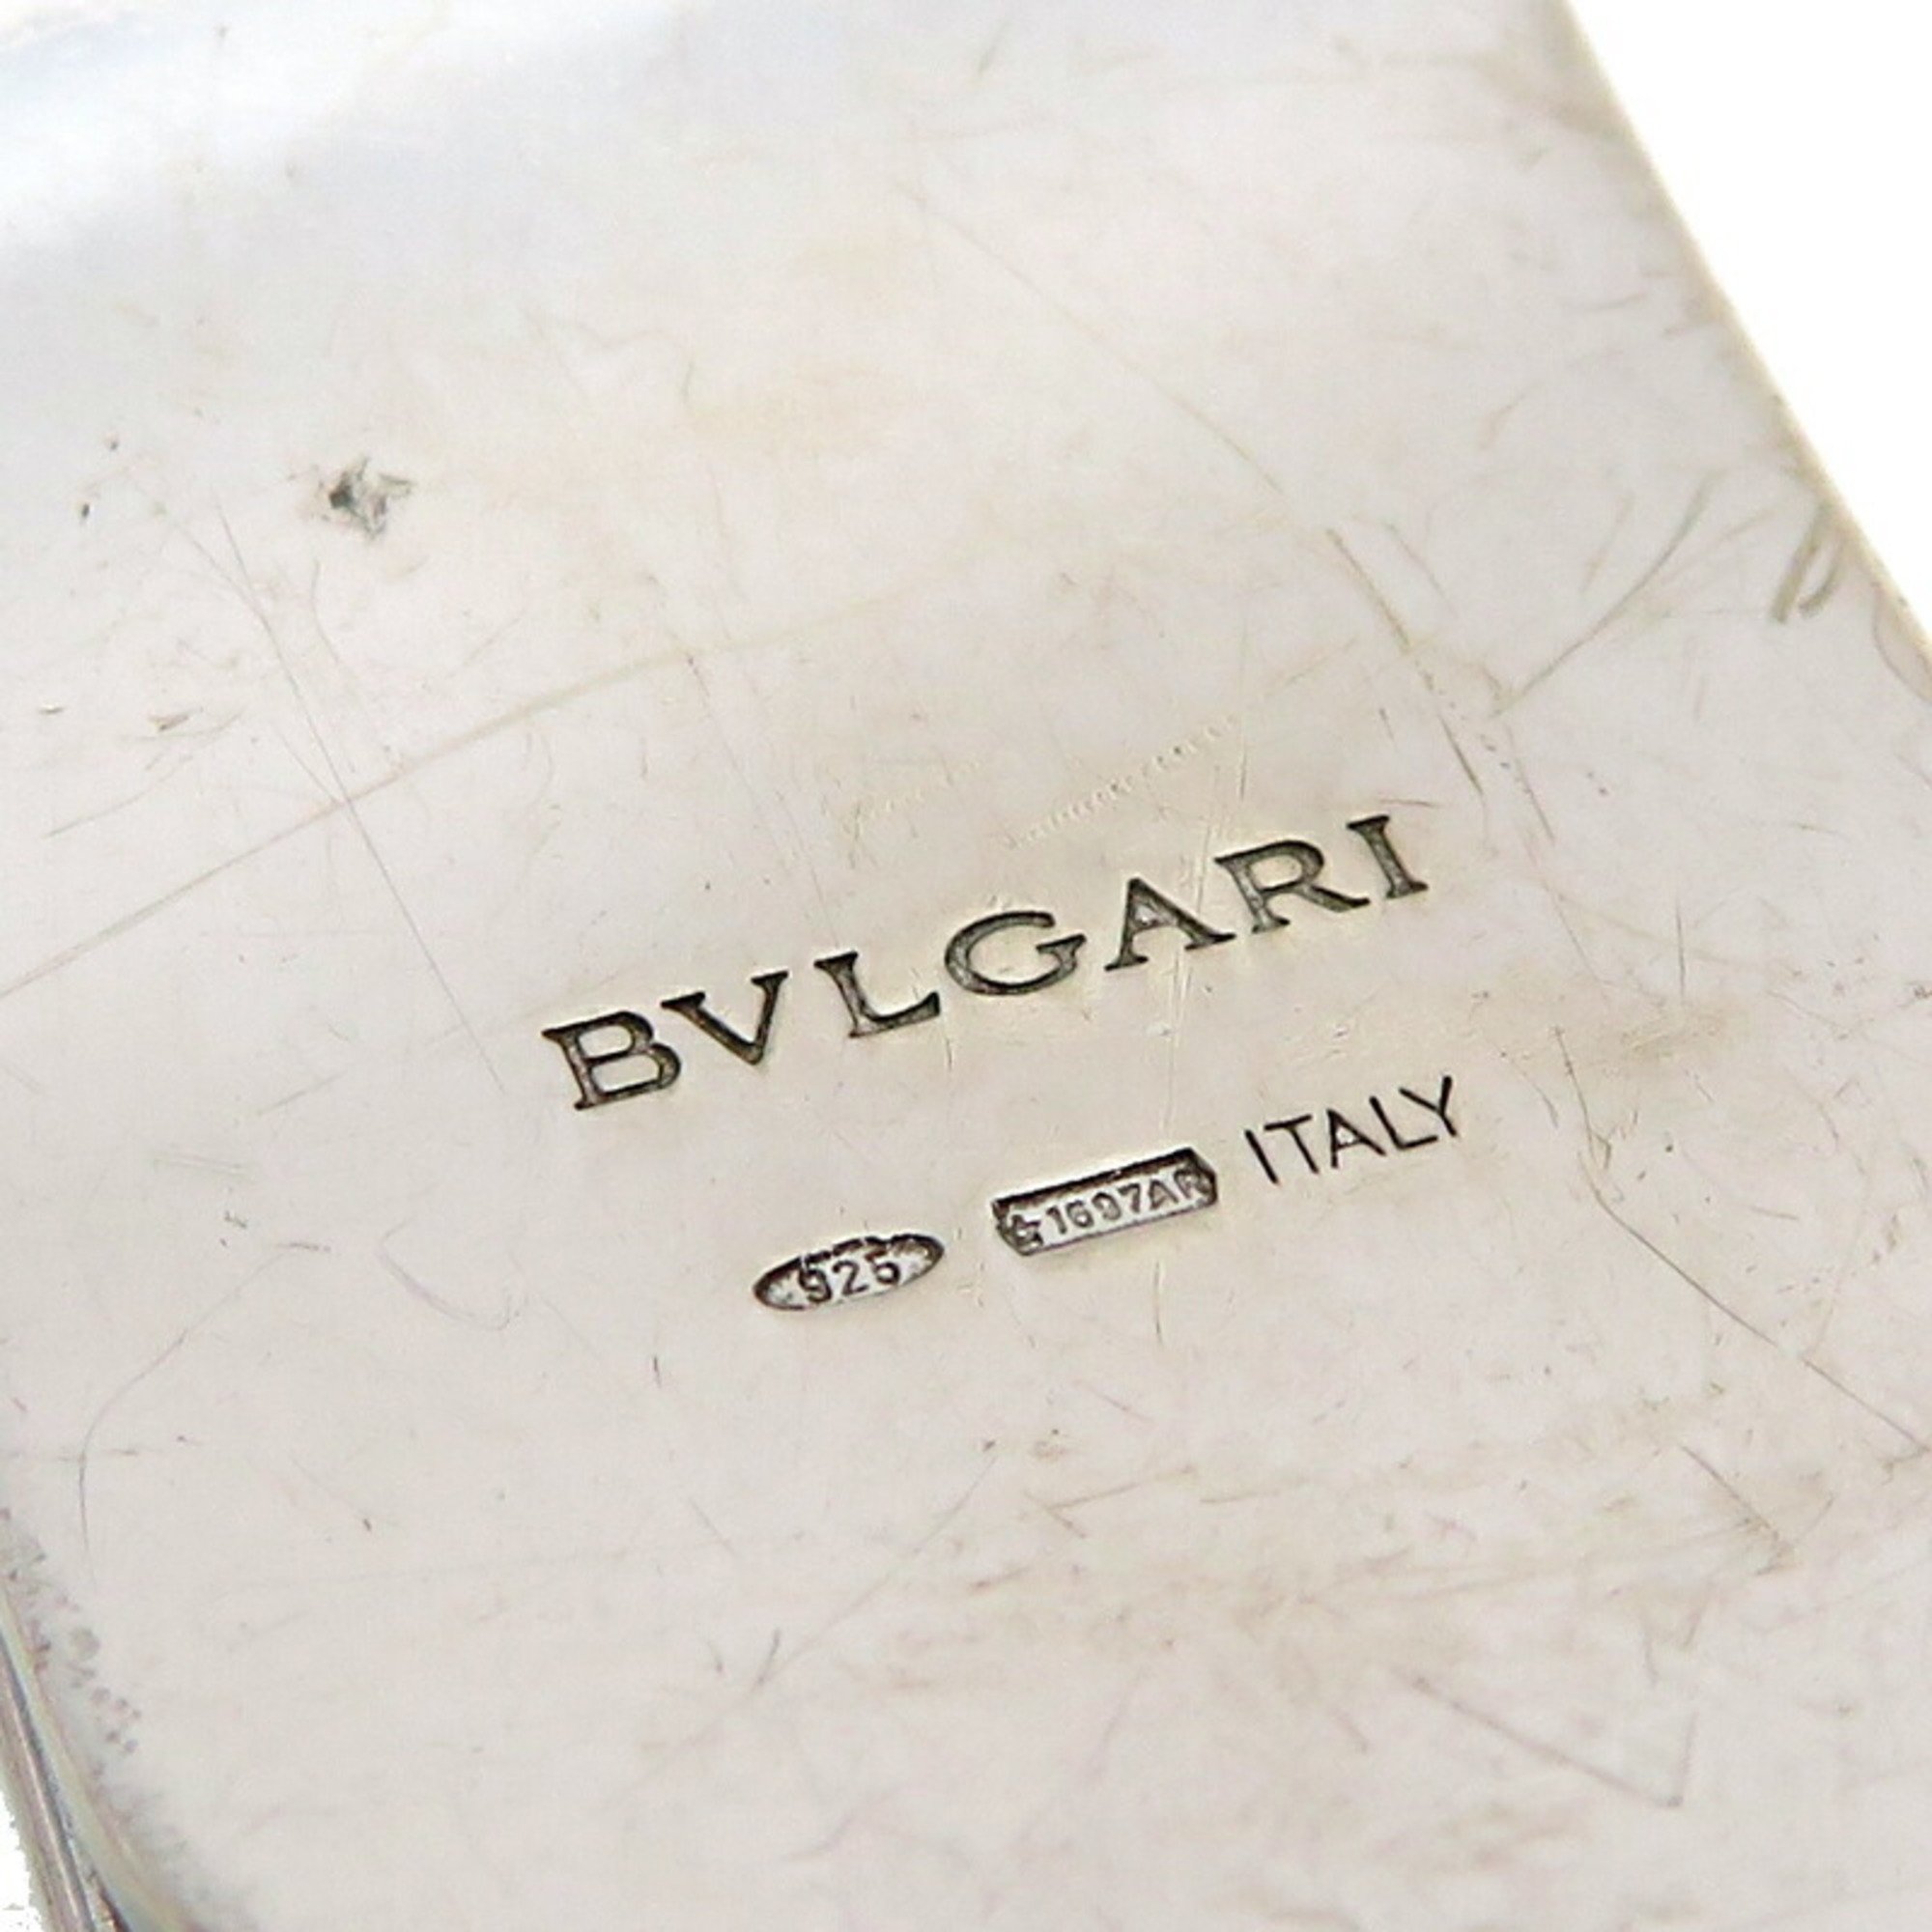 Bvlgari Bulgari SV925 Men's Money Clip Silver 925